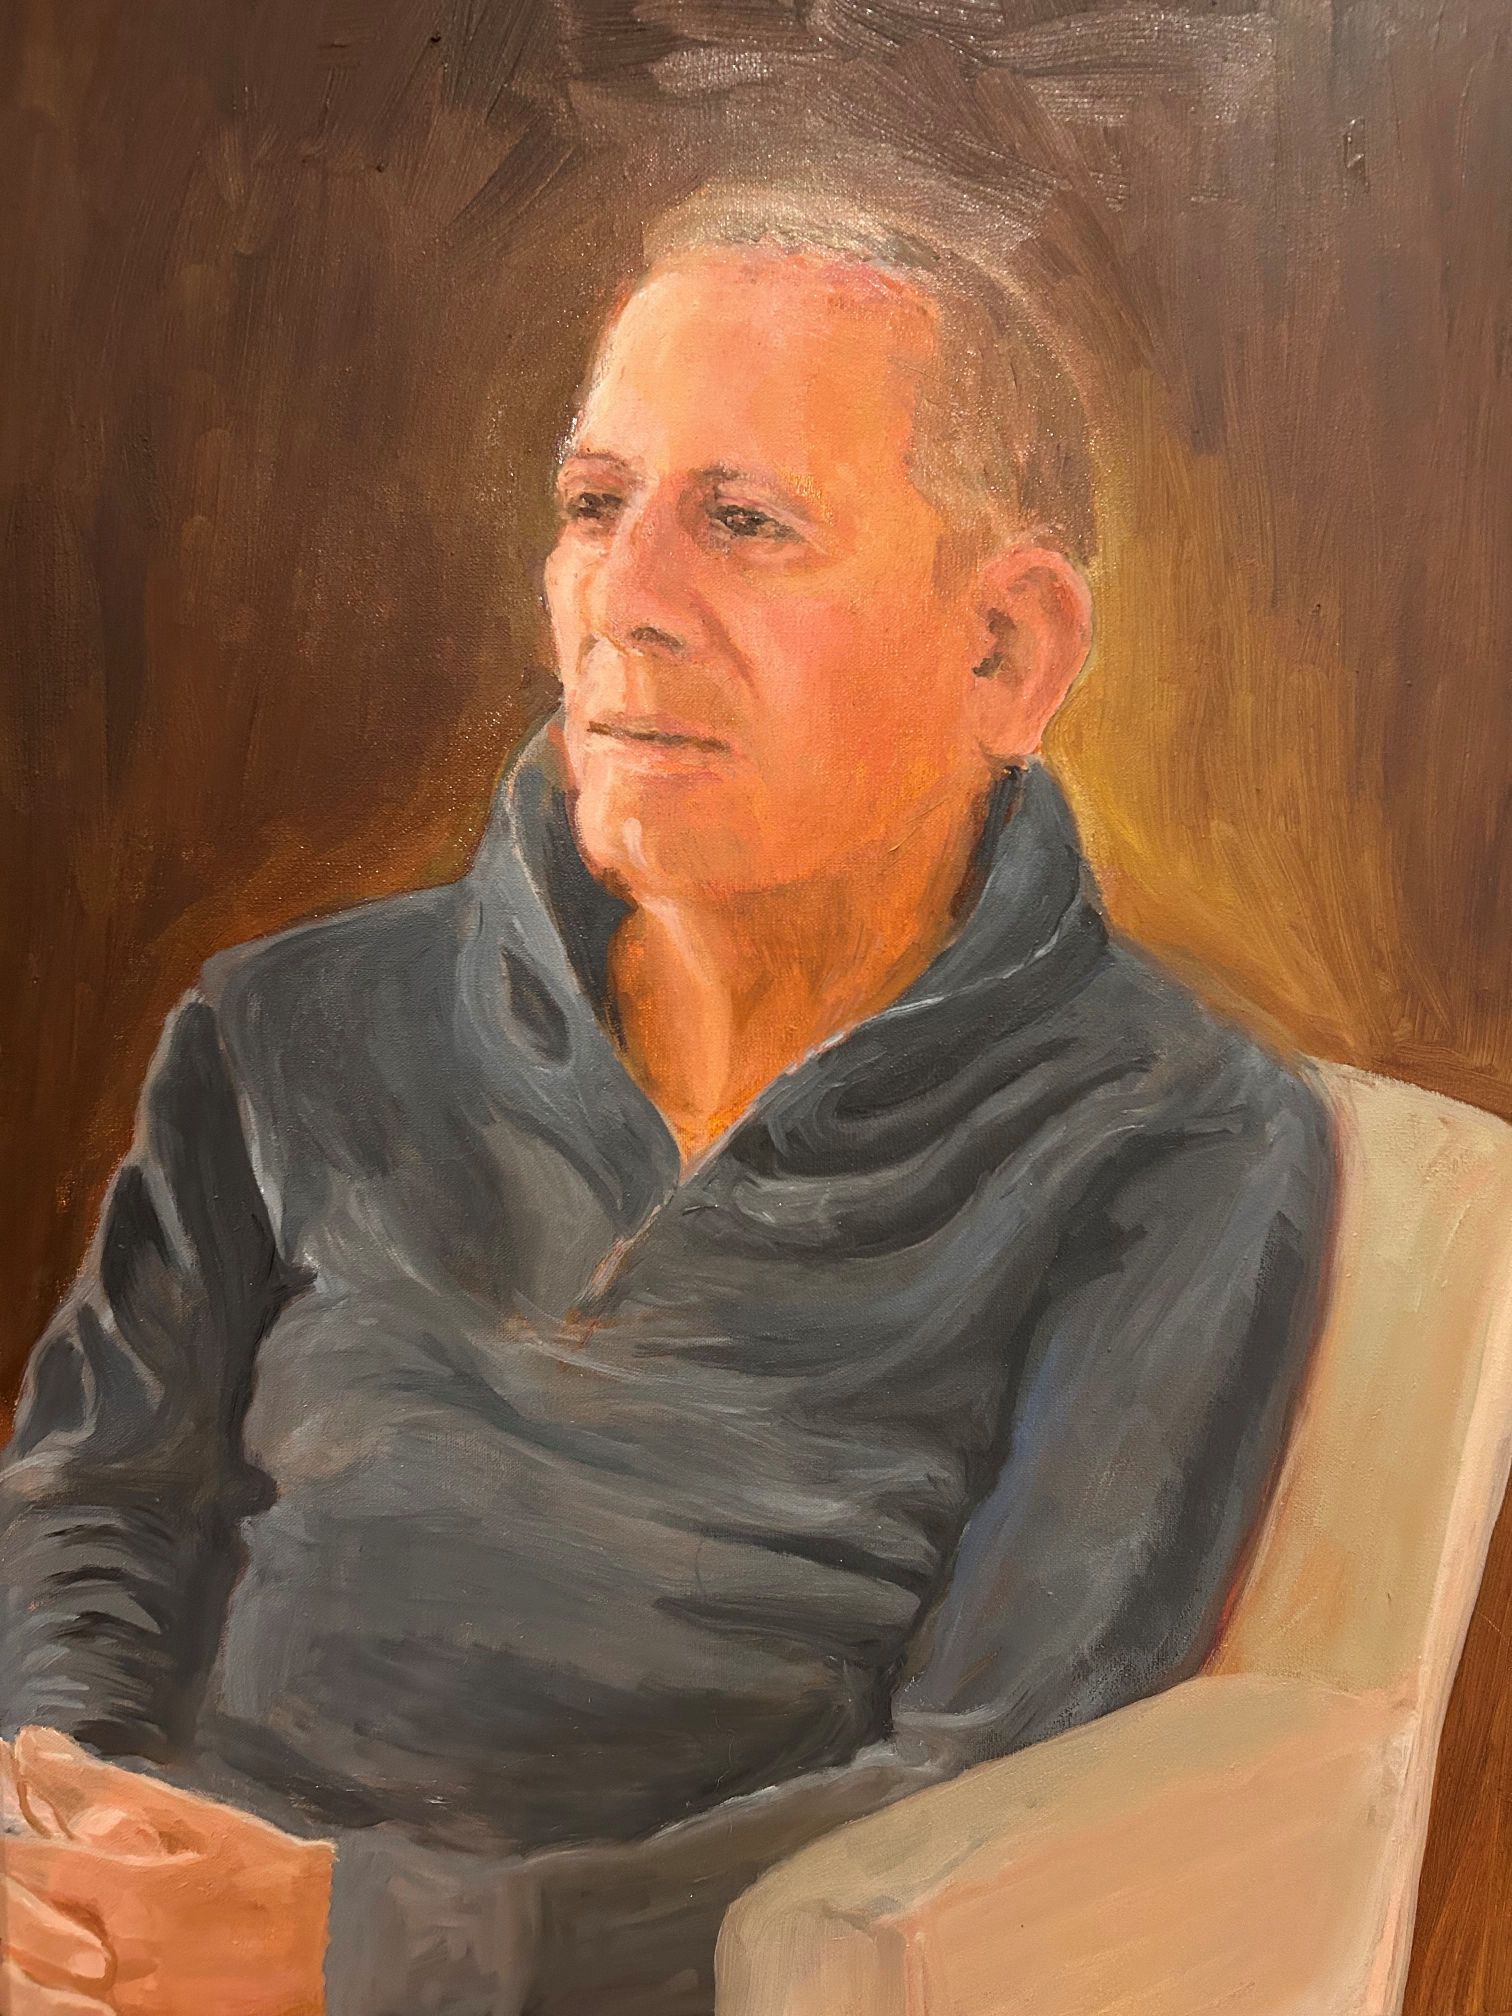 Lew portrait